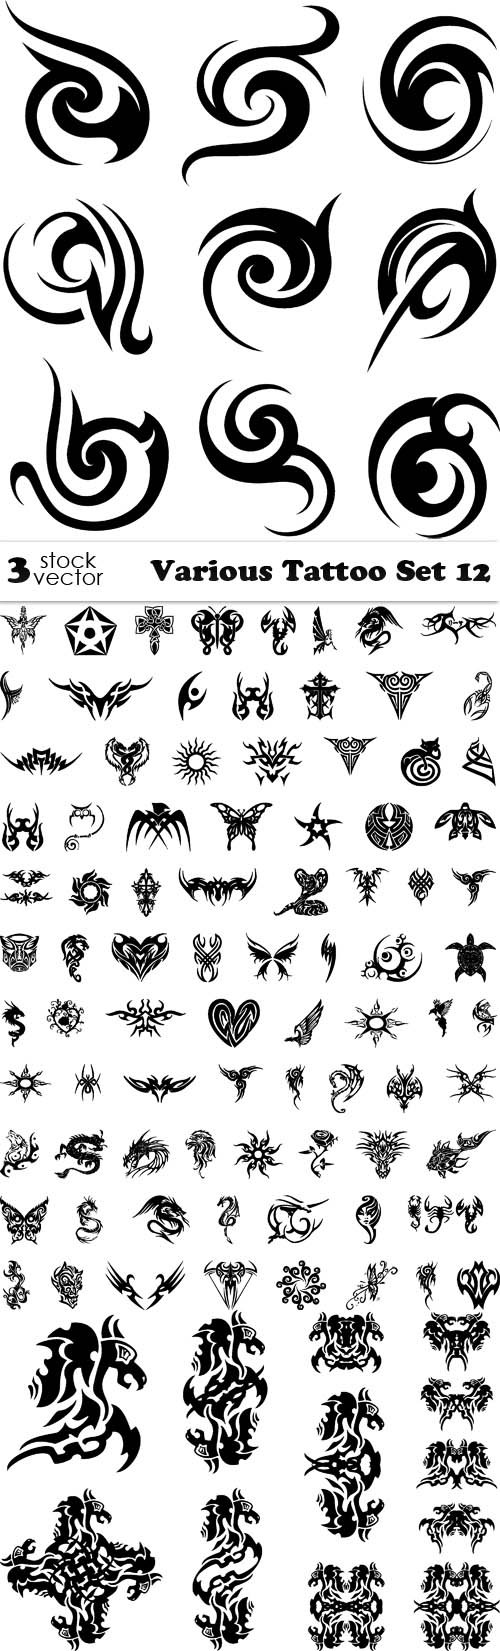 Vectors - Various Tattoo Set 12